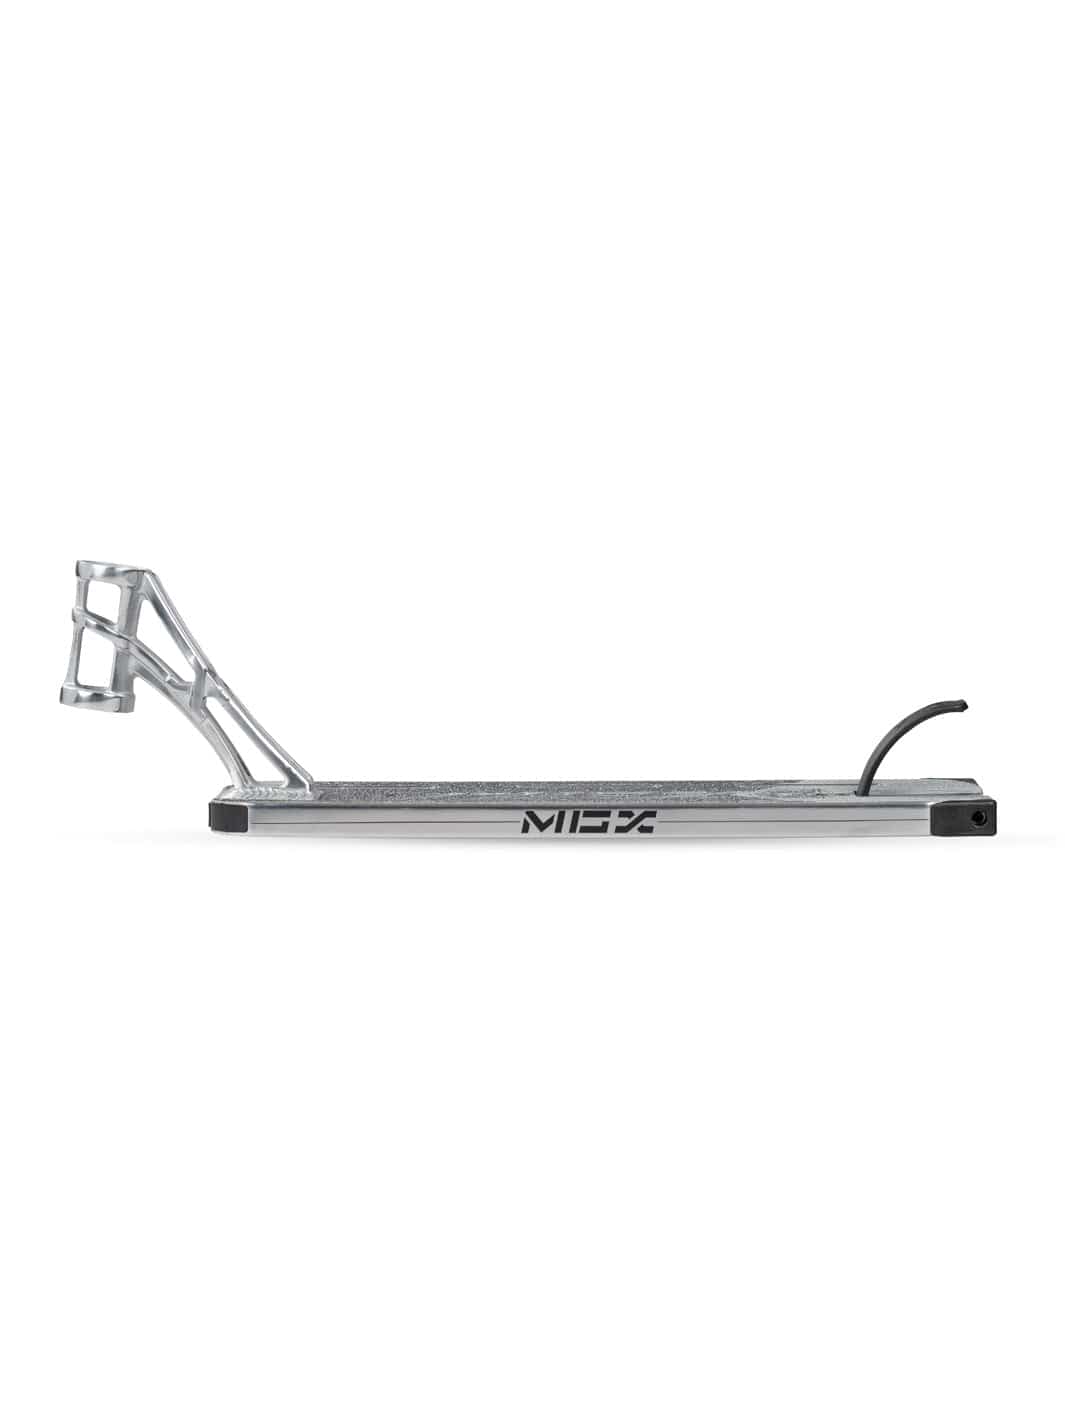 Madd Gear MGP MGX Pro Scooter Deck Chrome Silver Raw Street Park Lightweight Light Strongest Best